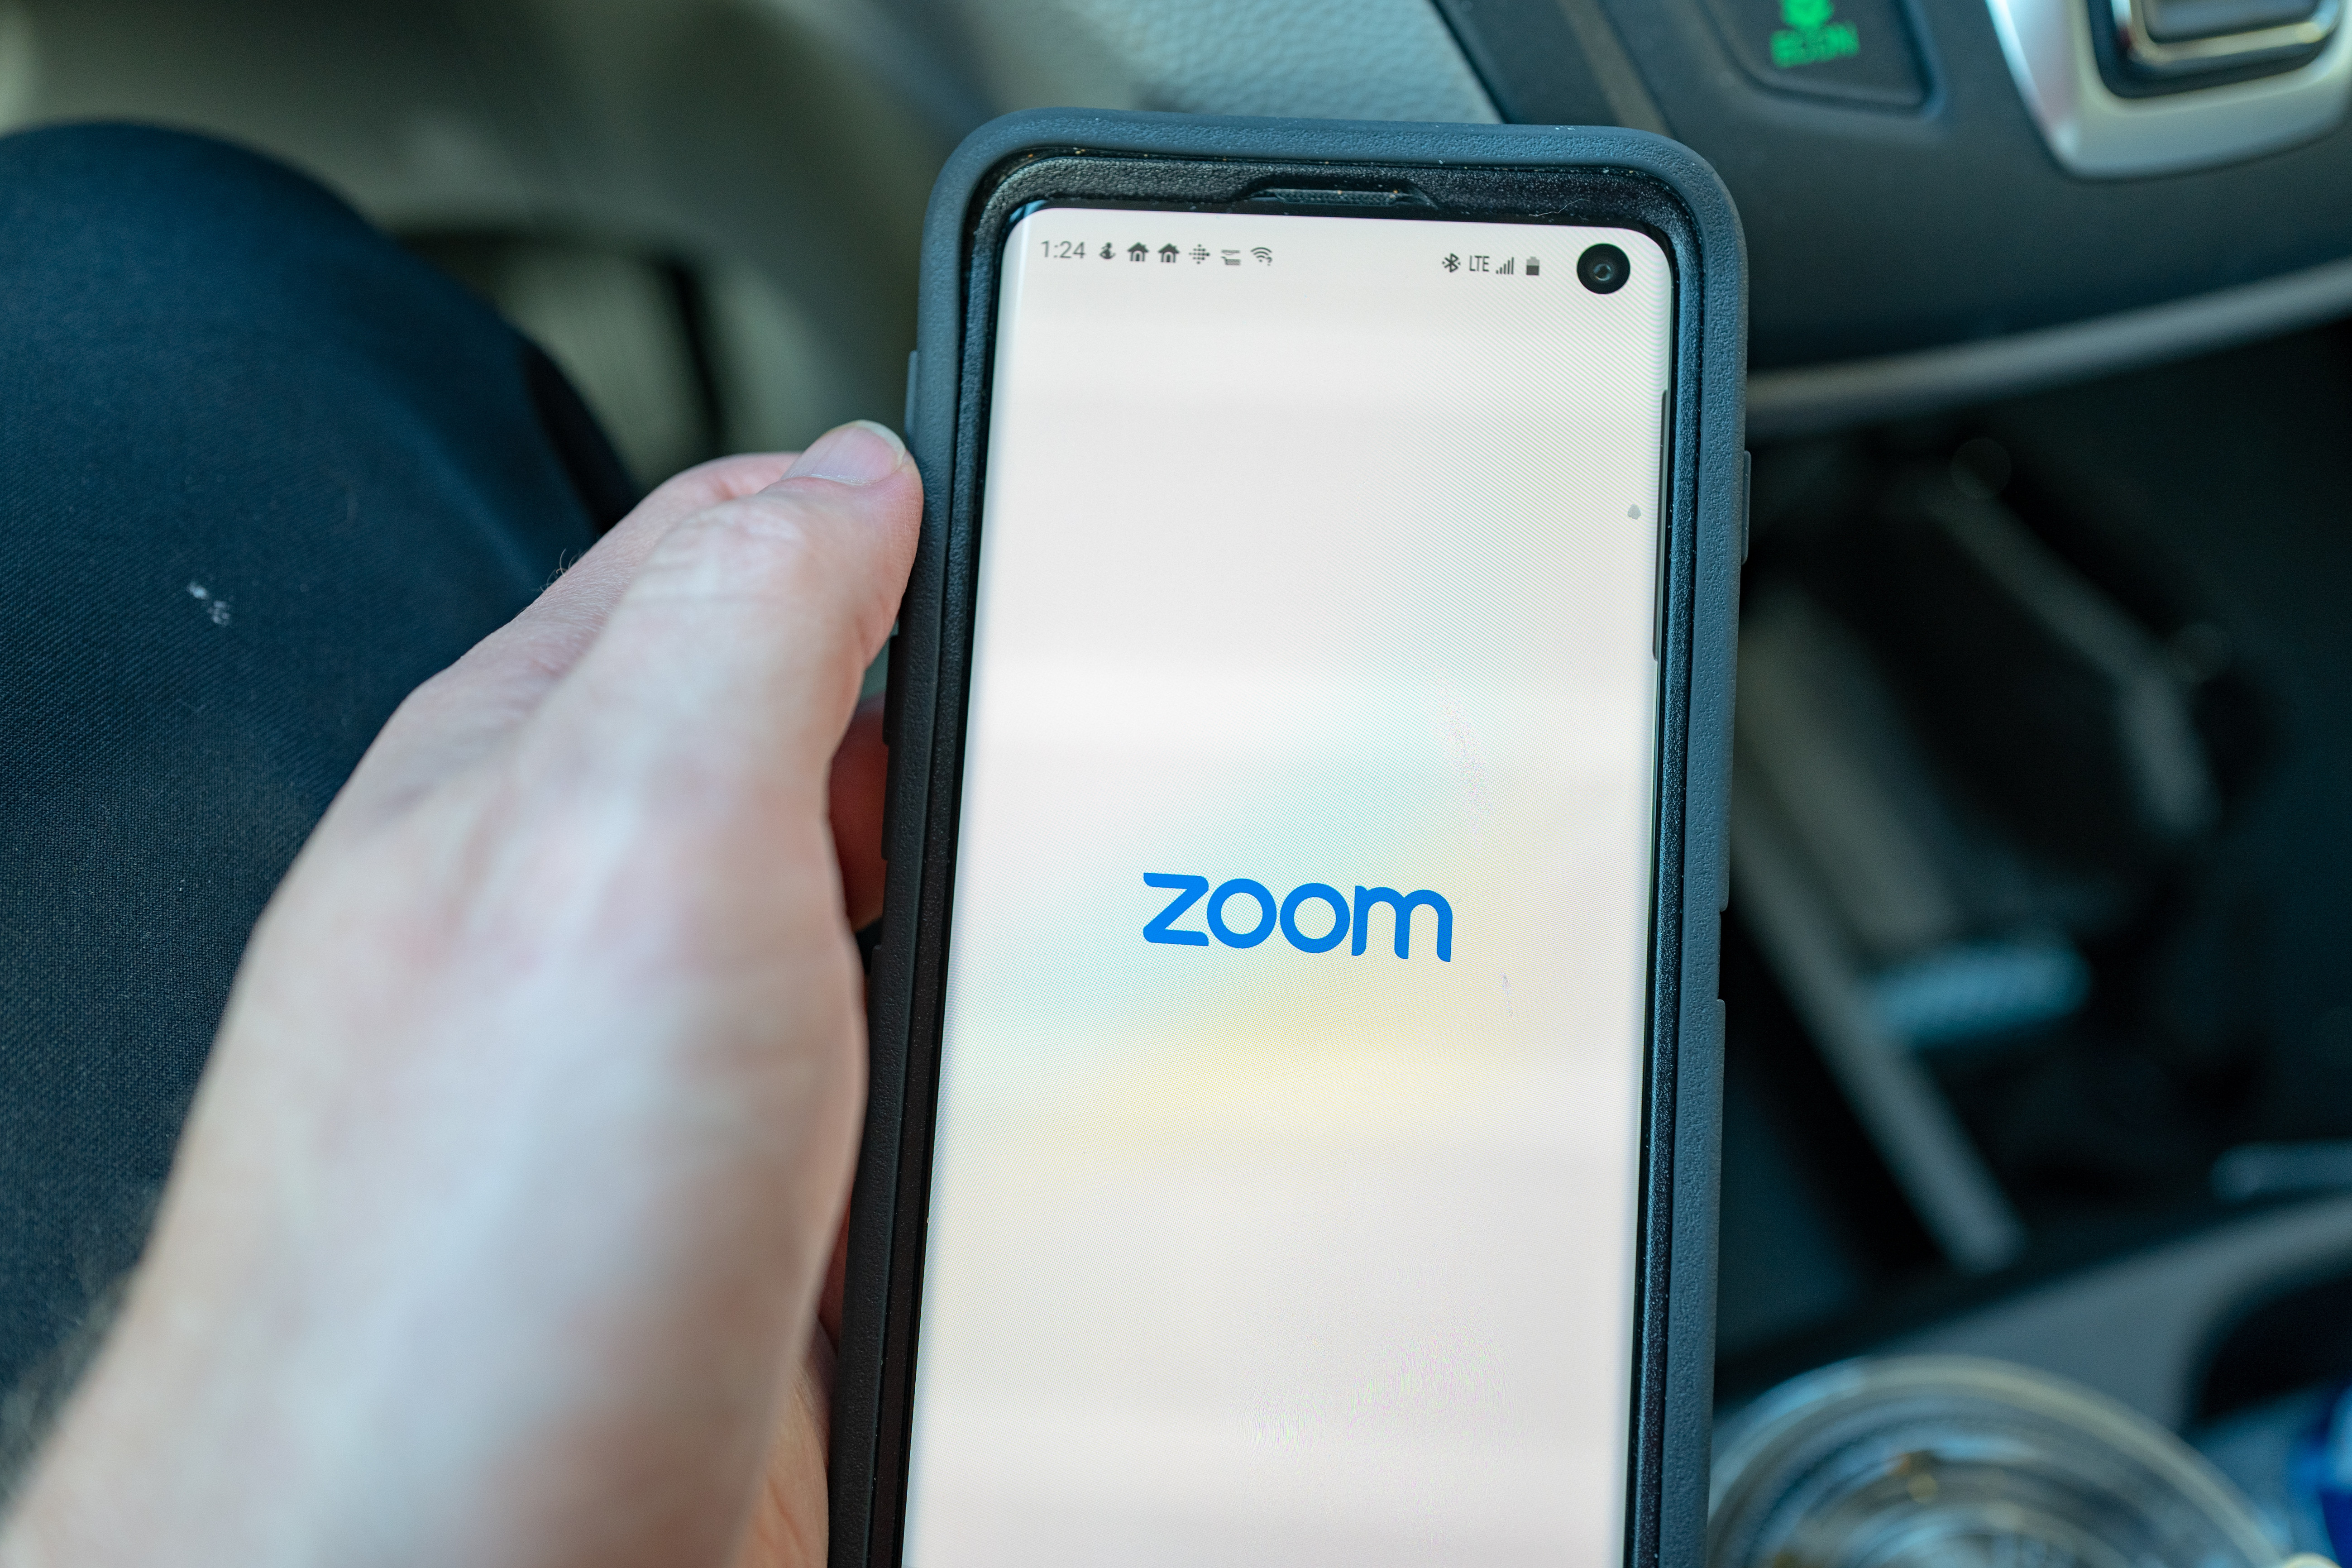   عادة ما يضطر الأشخاص إلى الدفع مقابل Zoom إذا كانوا يريدون استخدامه لإجراء مكالمة أطول من 40 دقيقة